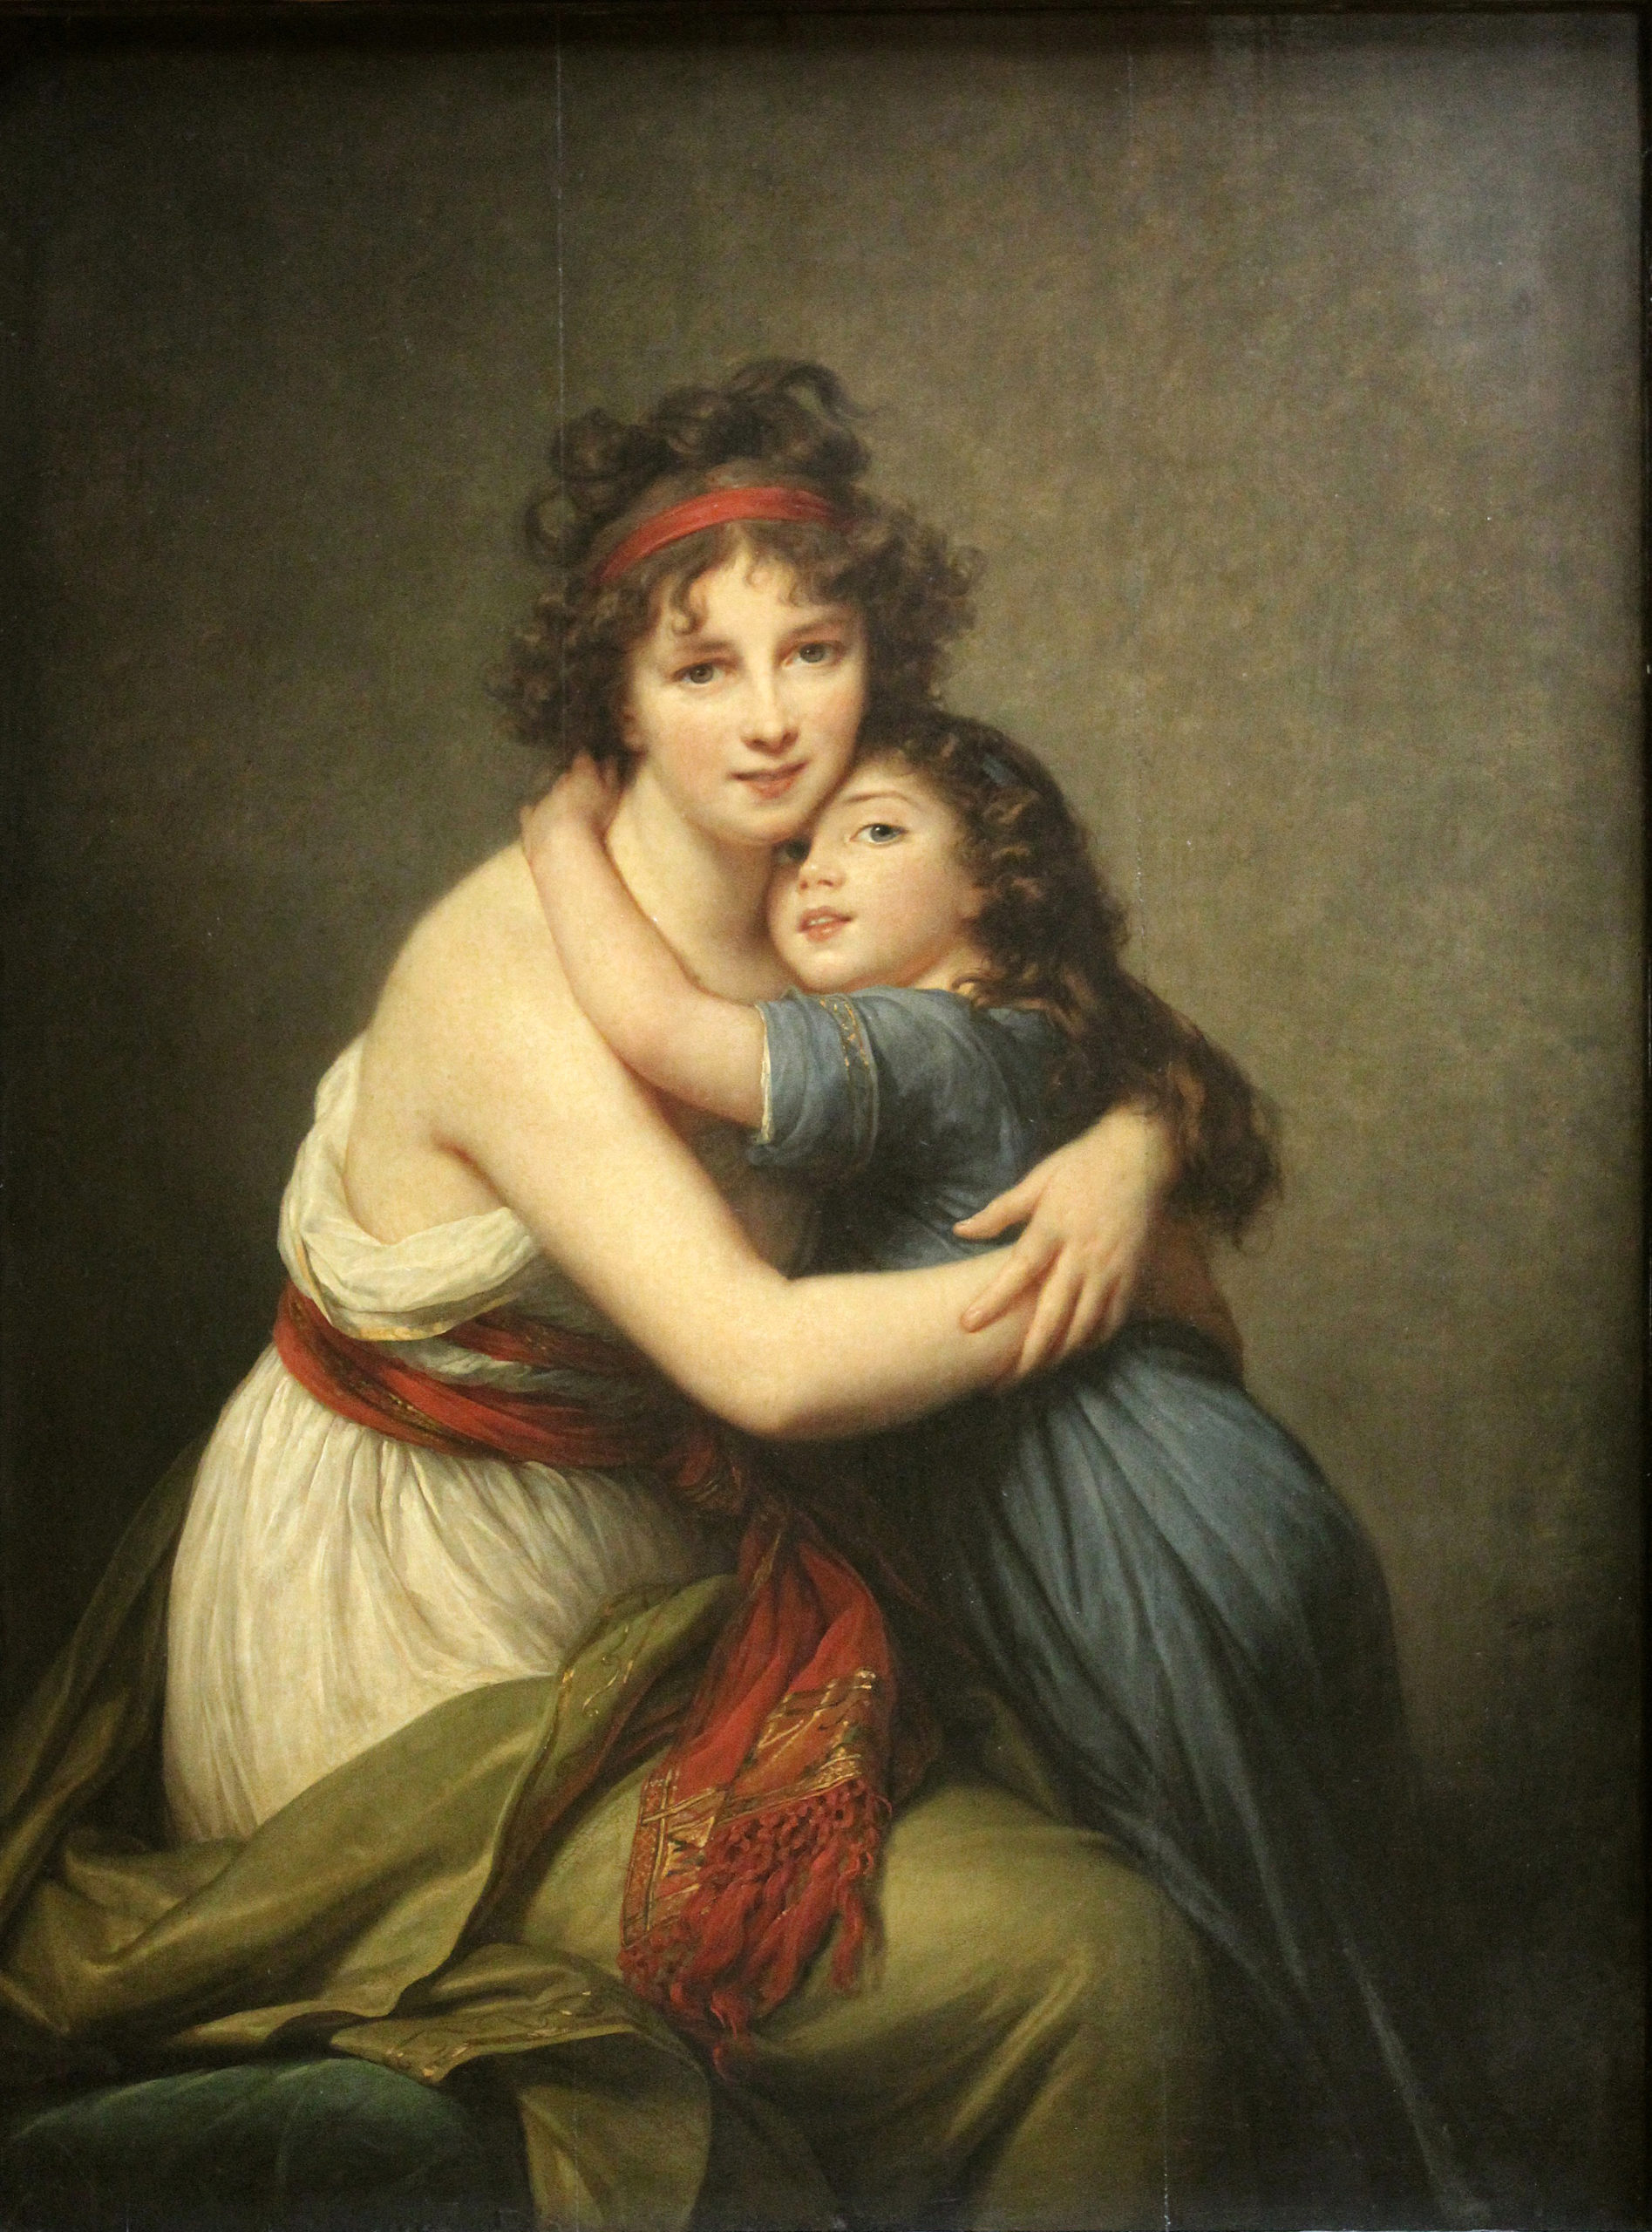 Elisabeth Vigée Le Brun, Self-Portrait with Her Daughter Julie (á l’Antique), 1789, oil on wood, 130 x 94 cm (Musée du Louvre, Paris)